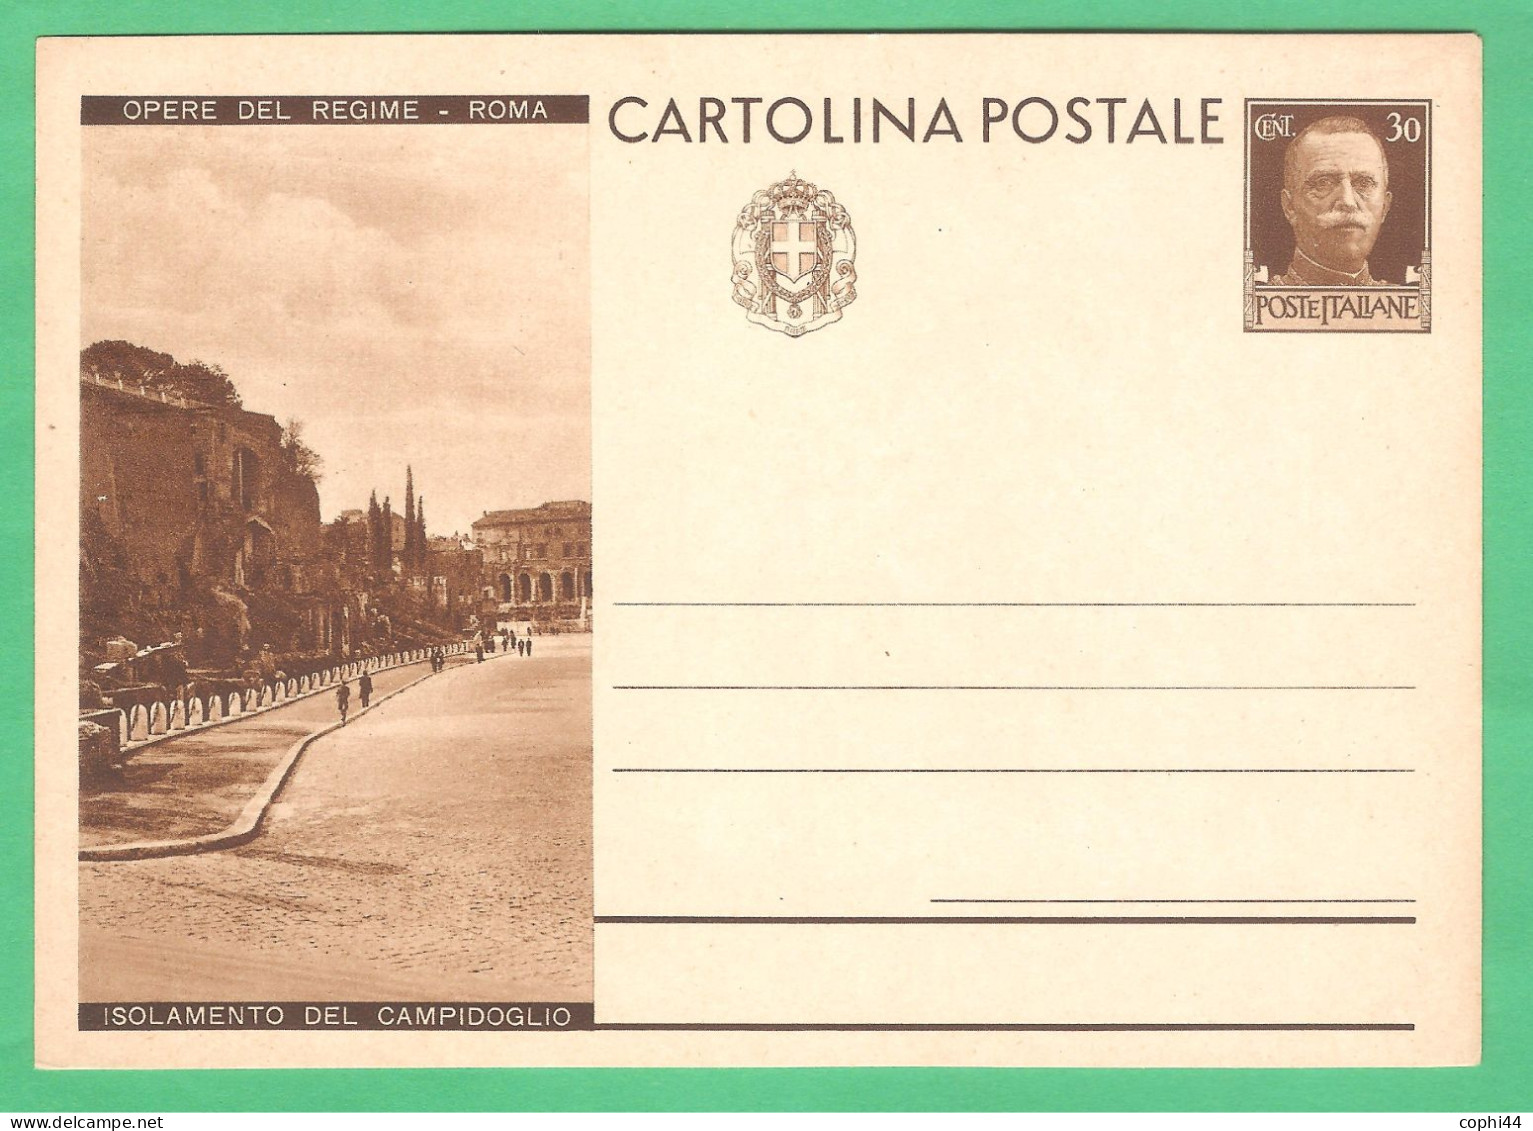 REGNO D'ITALIA 1932 CARTOLINA POSTALE VEIII OPERE DEL REGIME ISOLAMENTO CAMPIDOGLIO 30c Bruno (FILAGRANO C72-9) NUOVA - Stamped Stationery